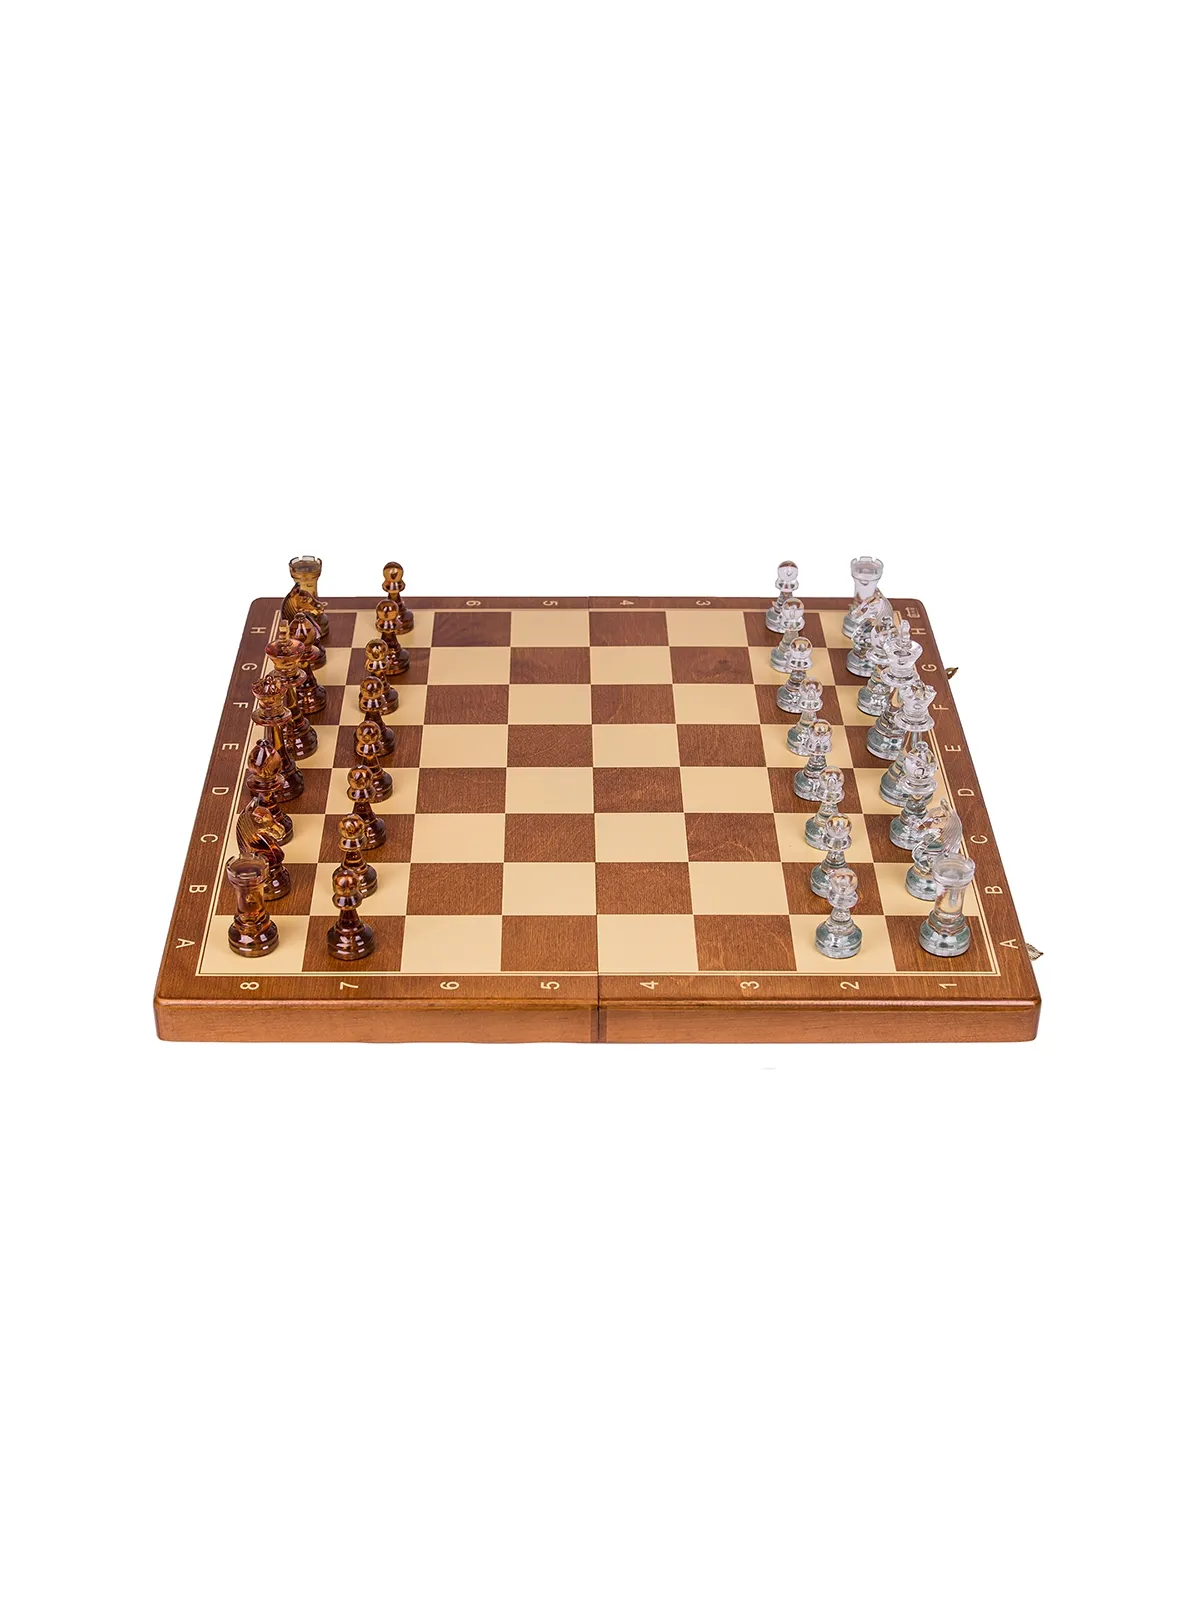 Chess Tournament No 6 - Basic